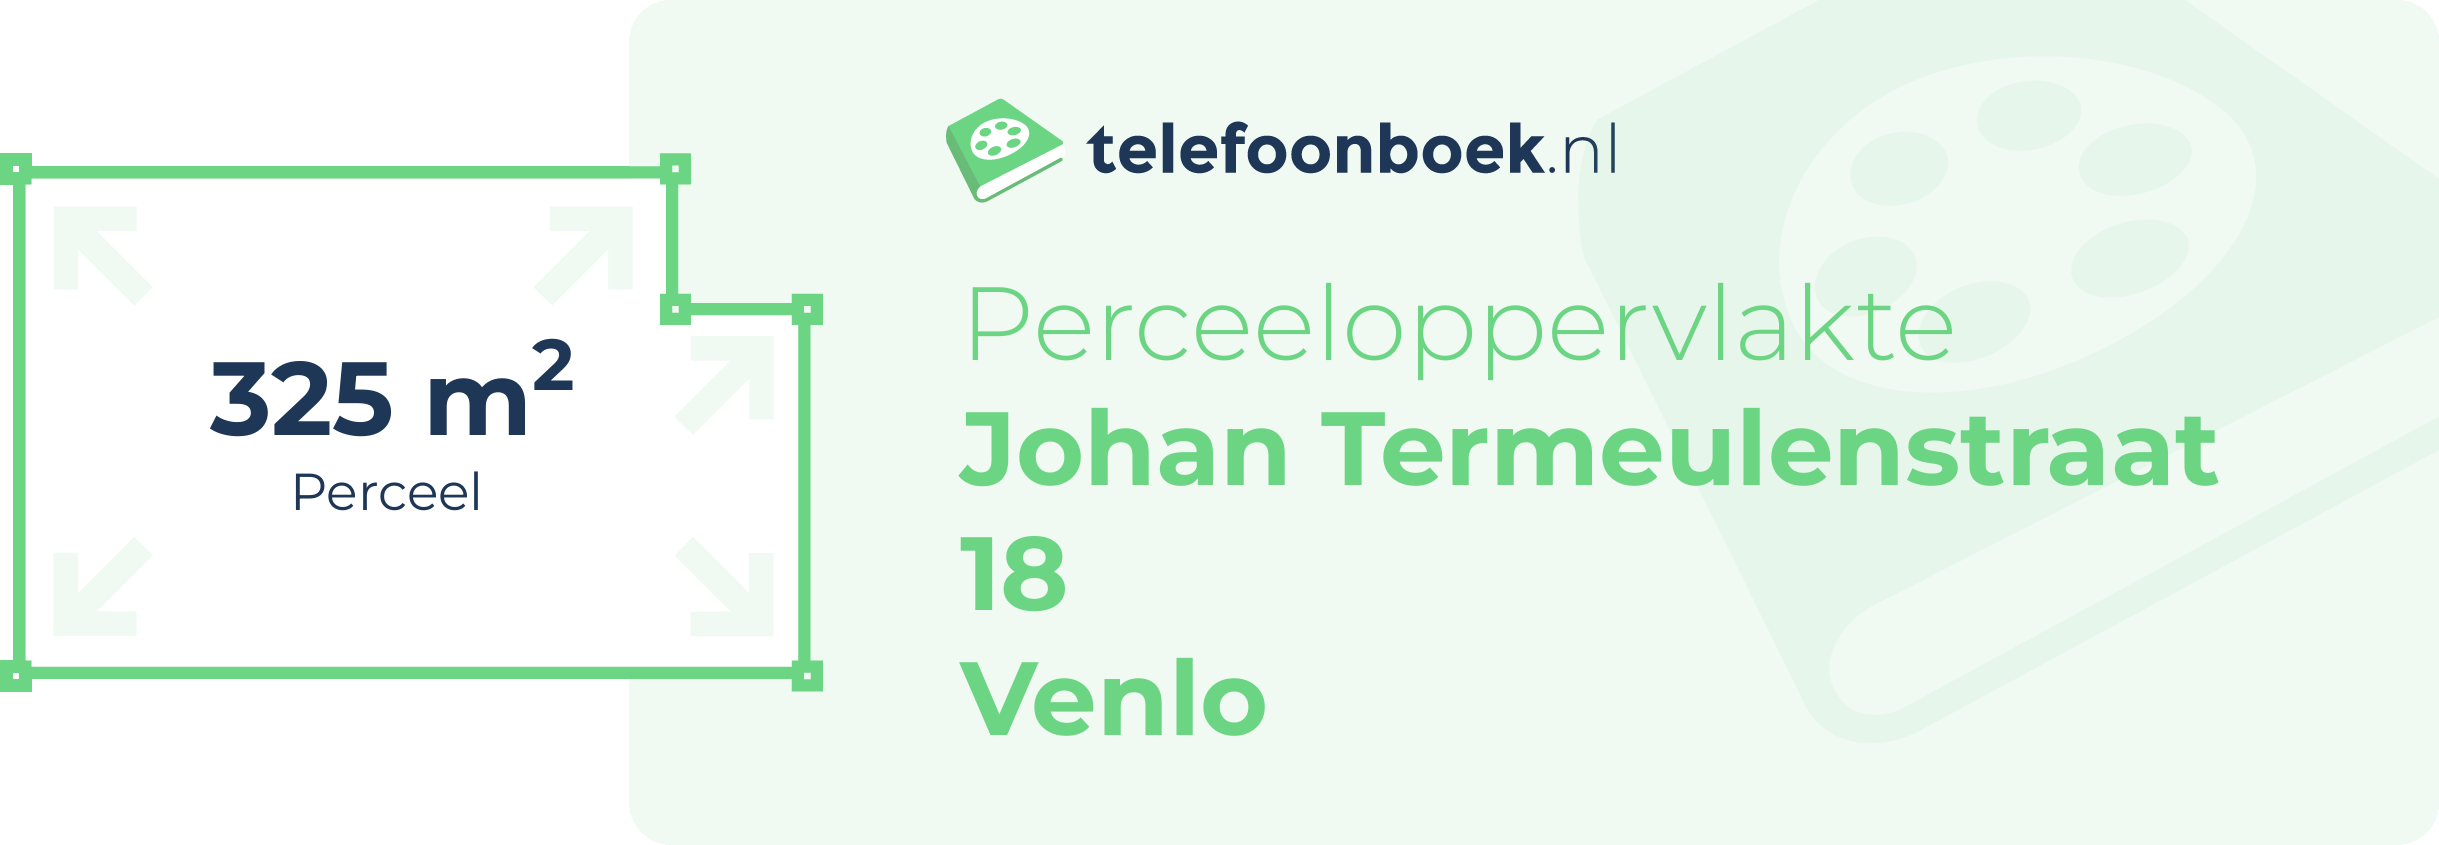 Perceeloppervlakte Johan Termeulenstraat 18 Venlo